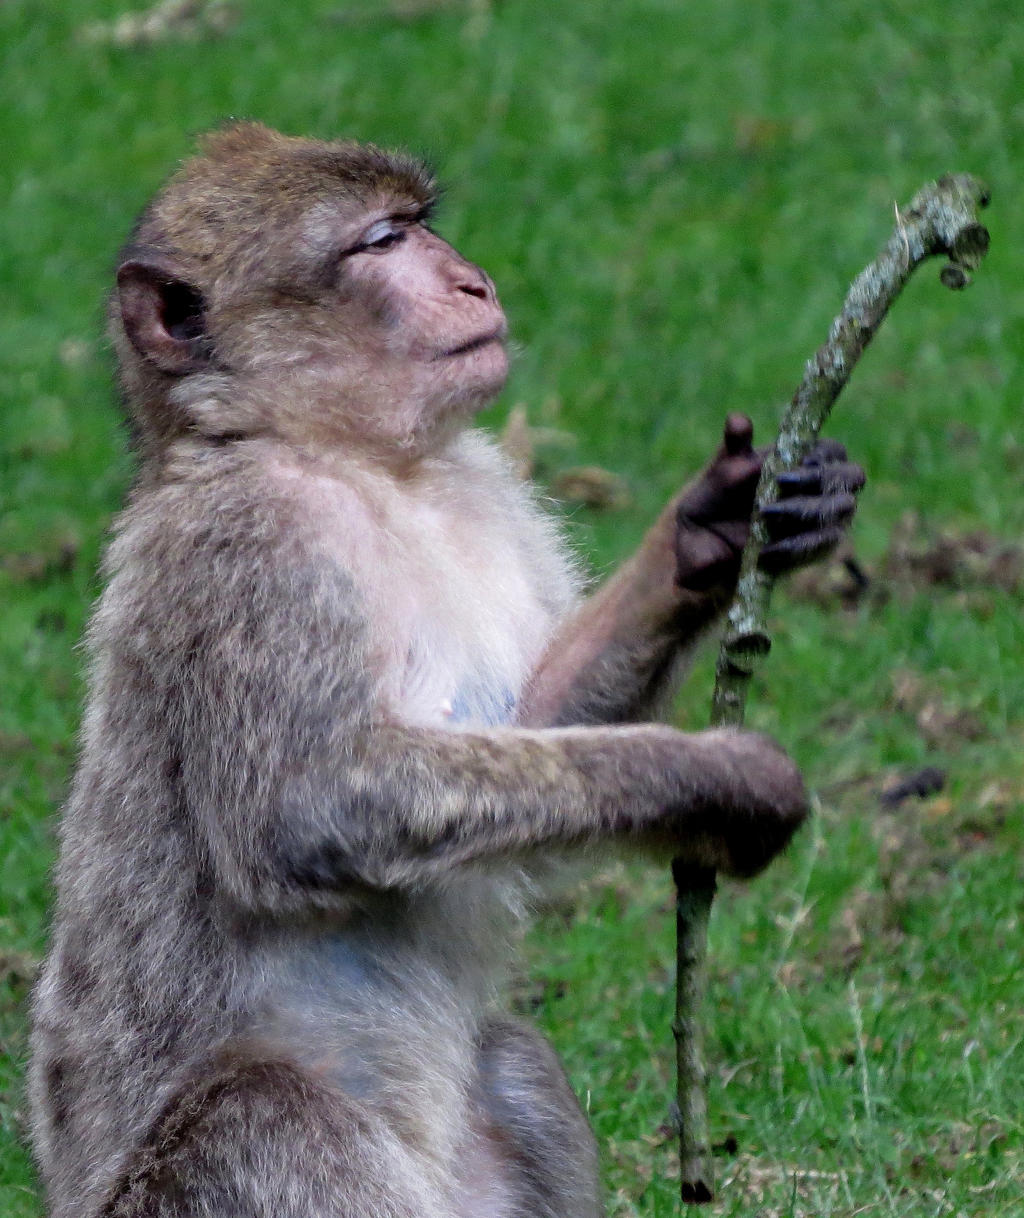 Monkey with Stick